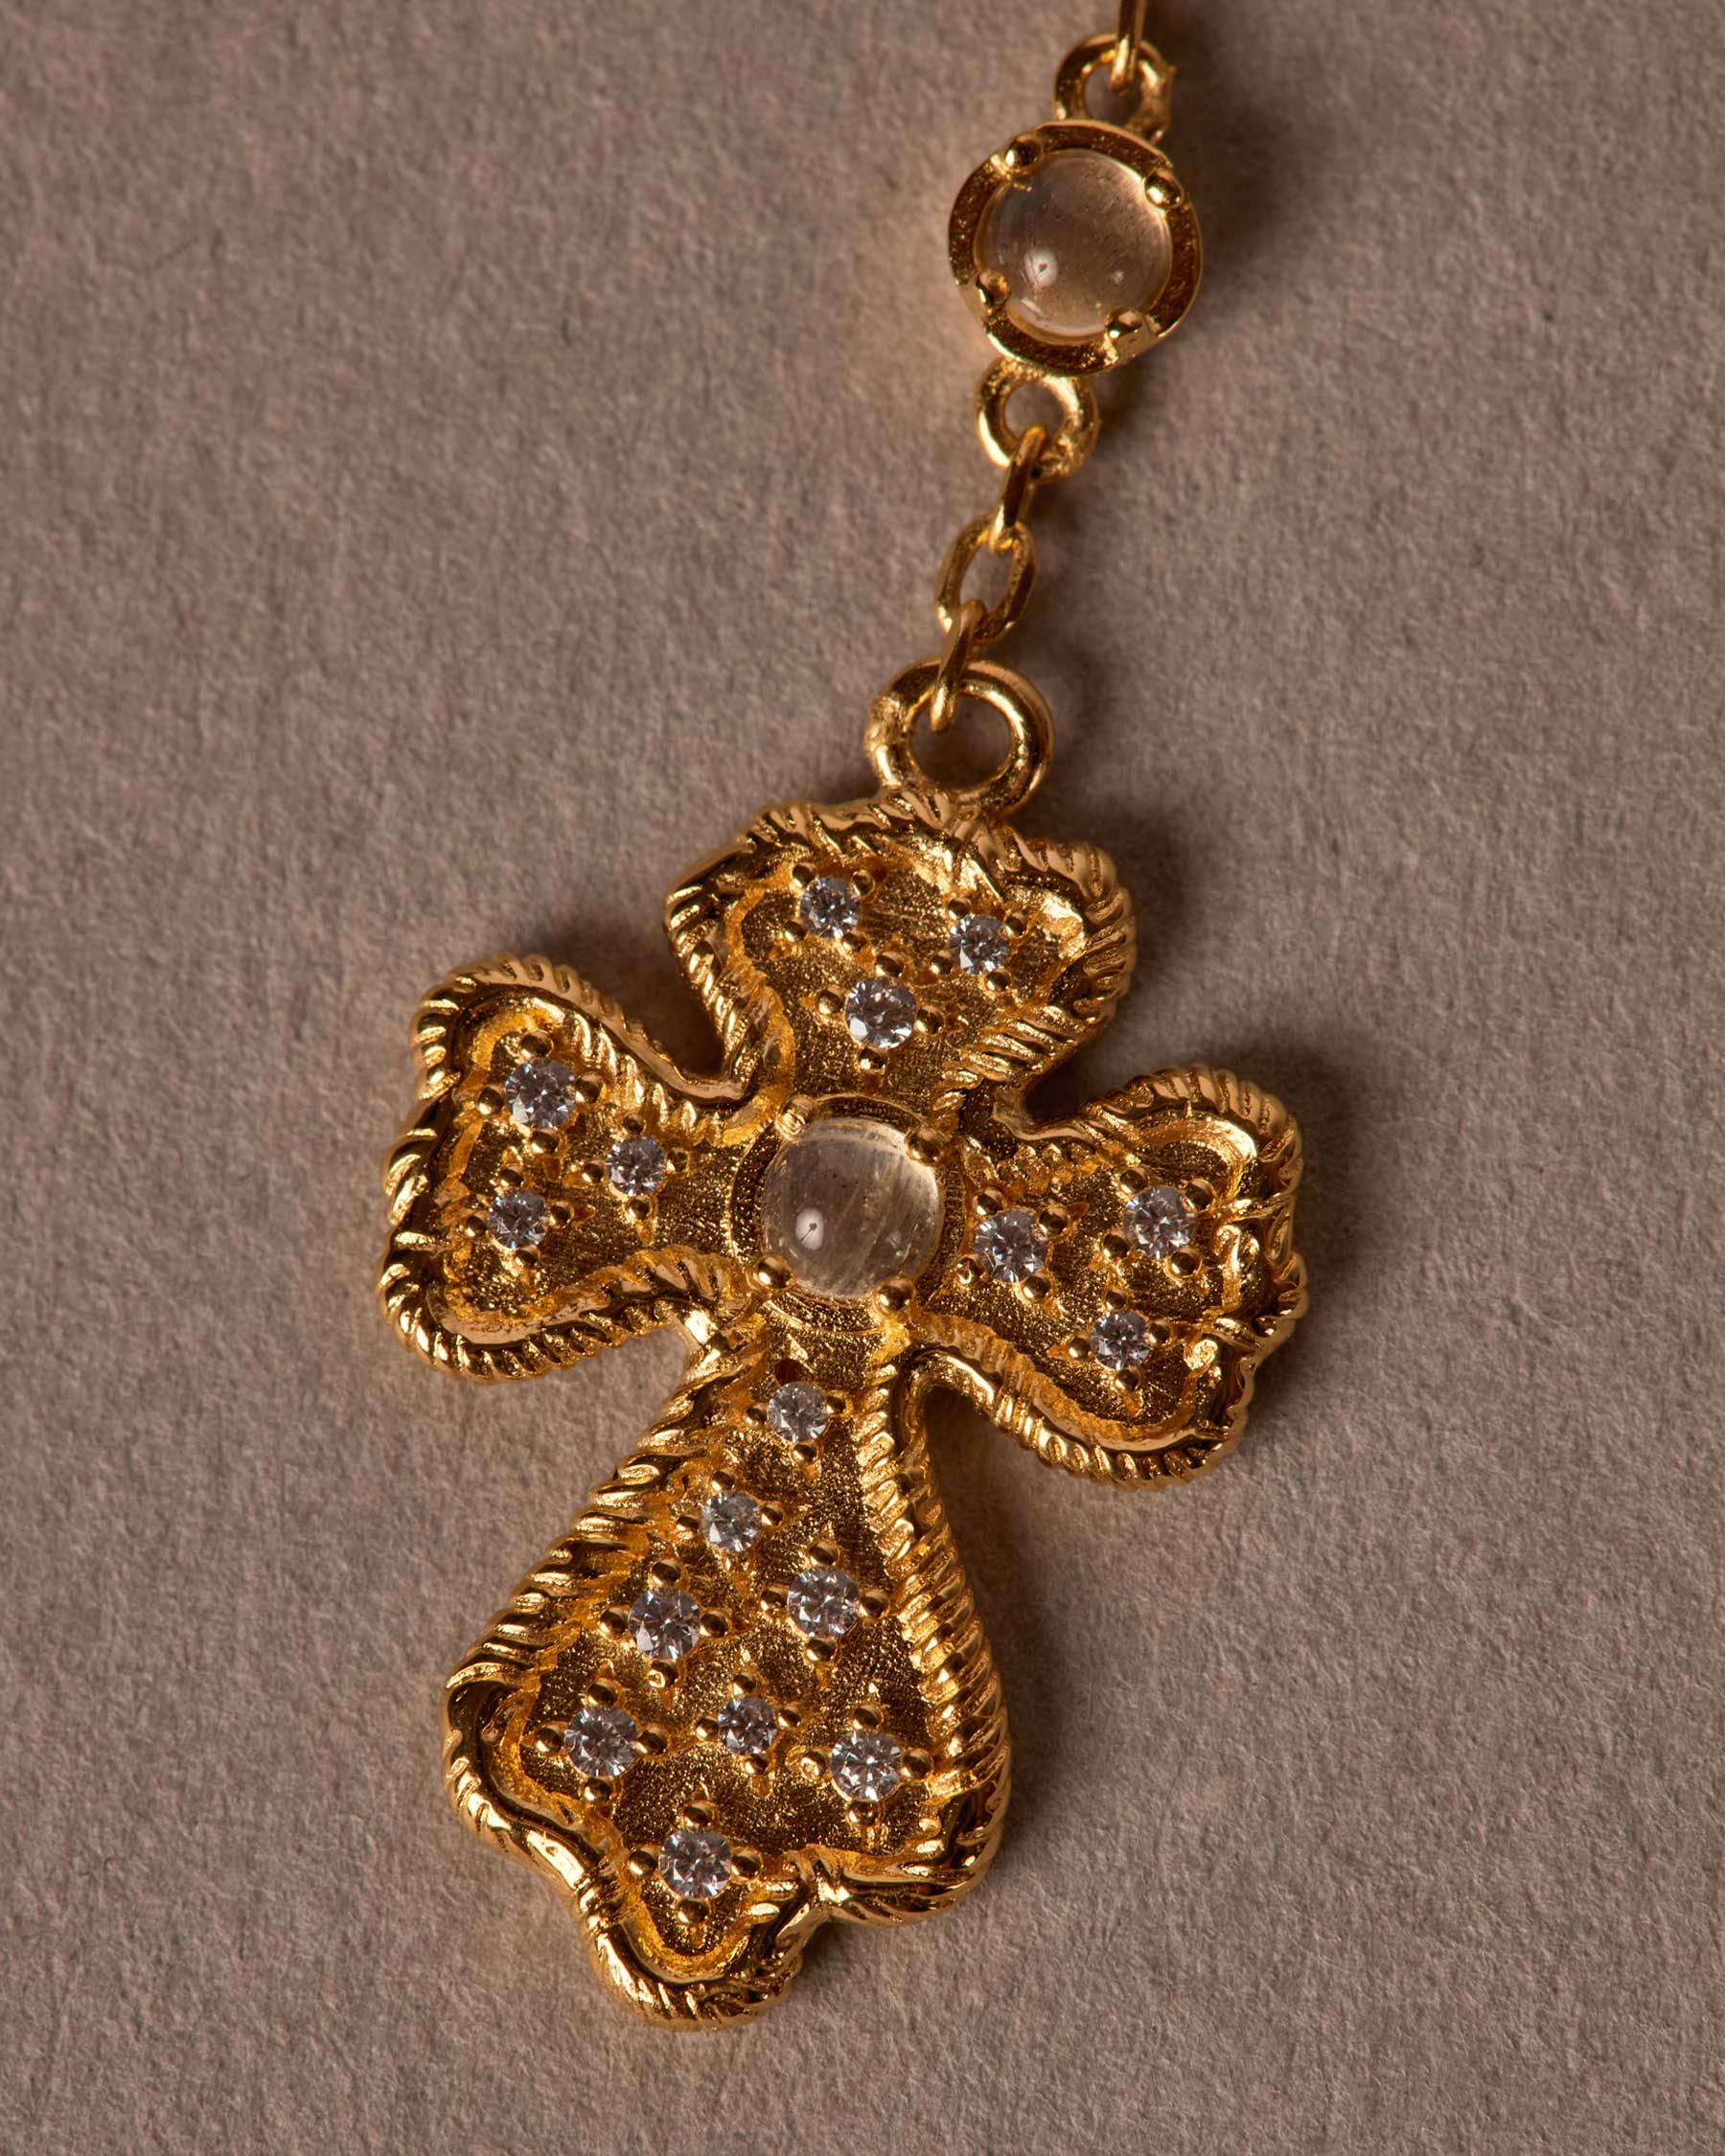 Schoenstatt Medal Rosary